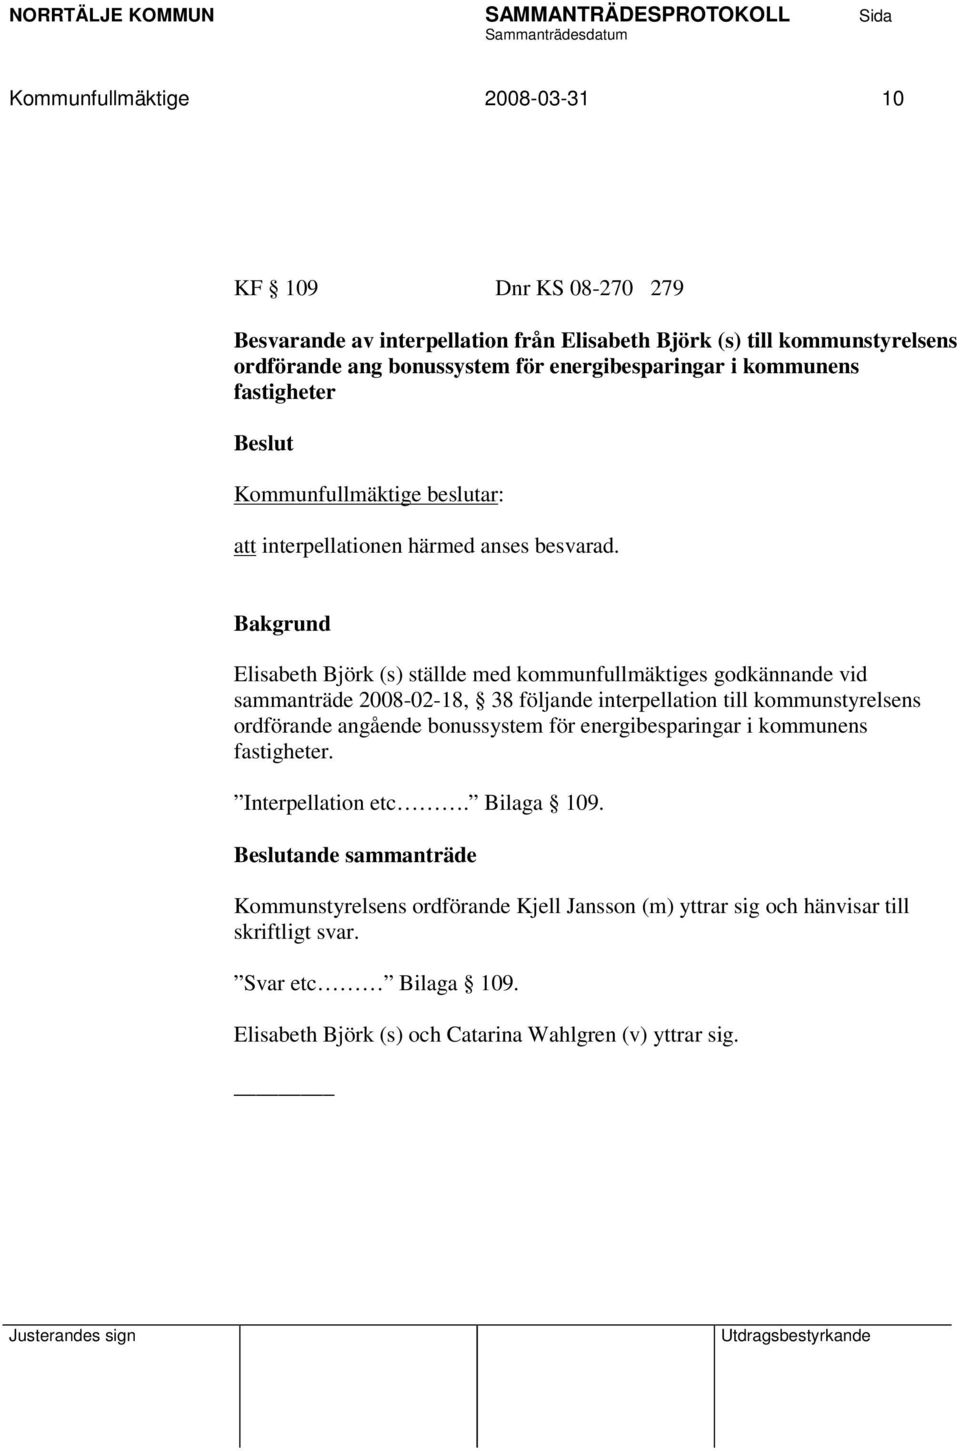 Elisabeth Björk (s) ställde med kommunfullmäktiges godkännande vid sammanträde 2008-02-18, 38 följande interpellation till kommunstyrelsens ordförande angående bonussystem